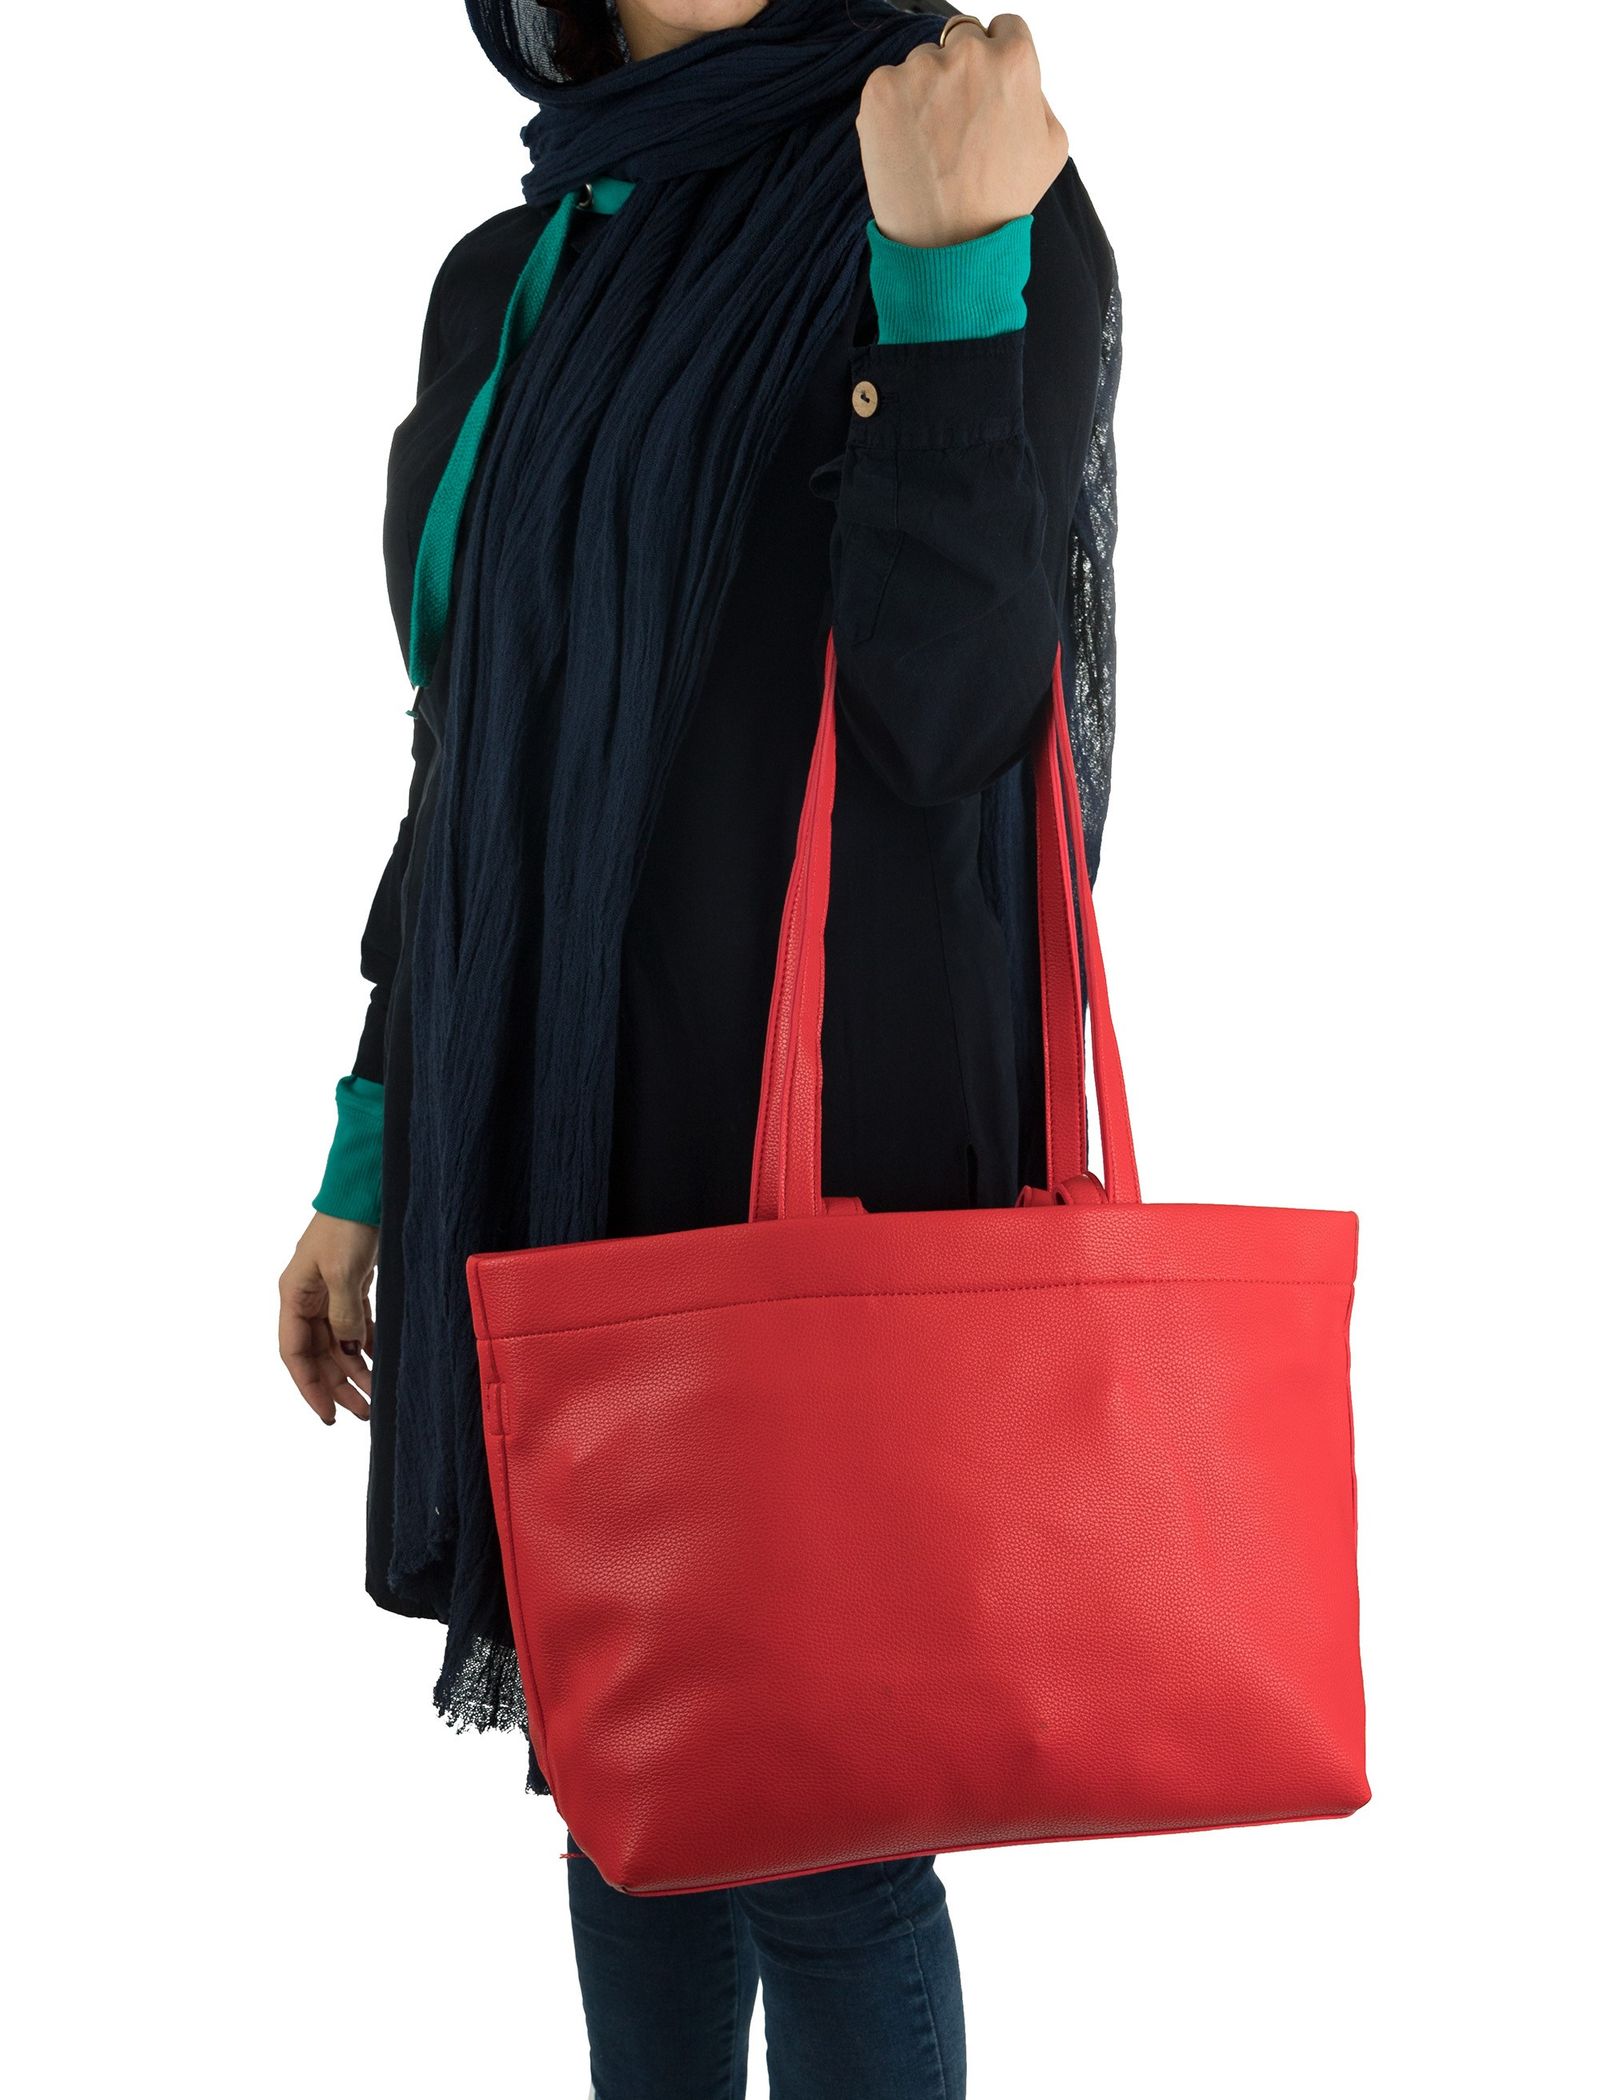 کیف دوشی روزمره زنانه - دادلین تک سایز - قرمز  - 3